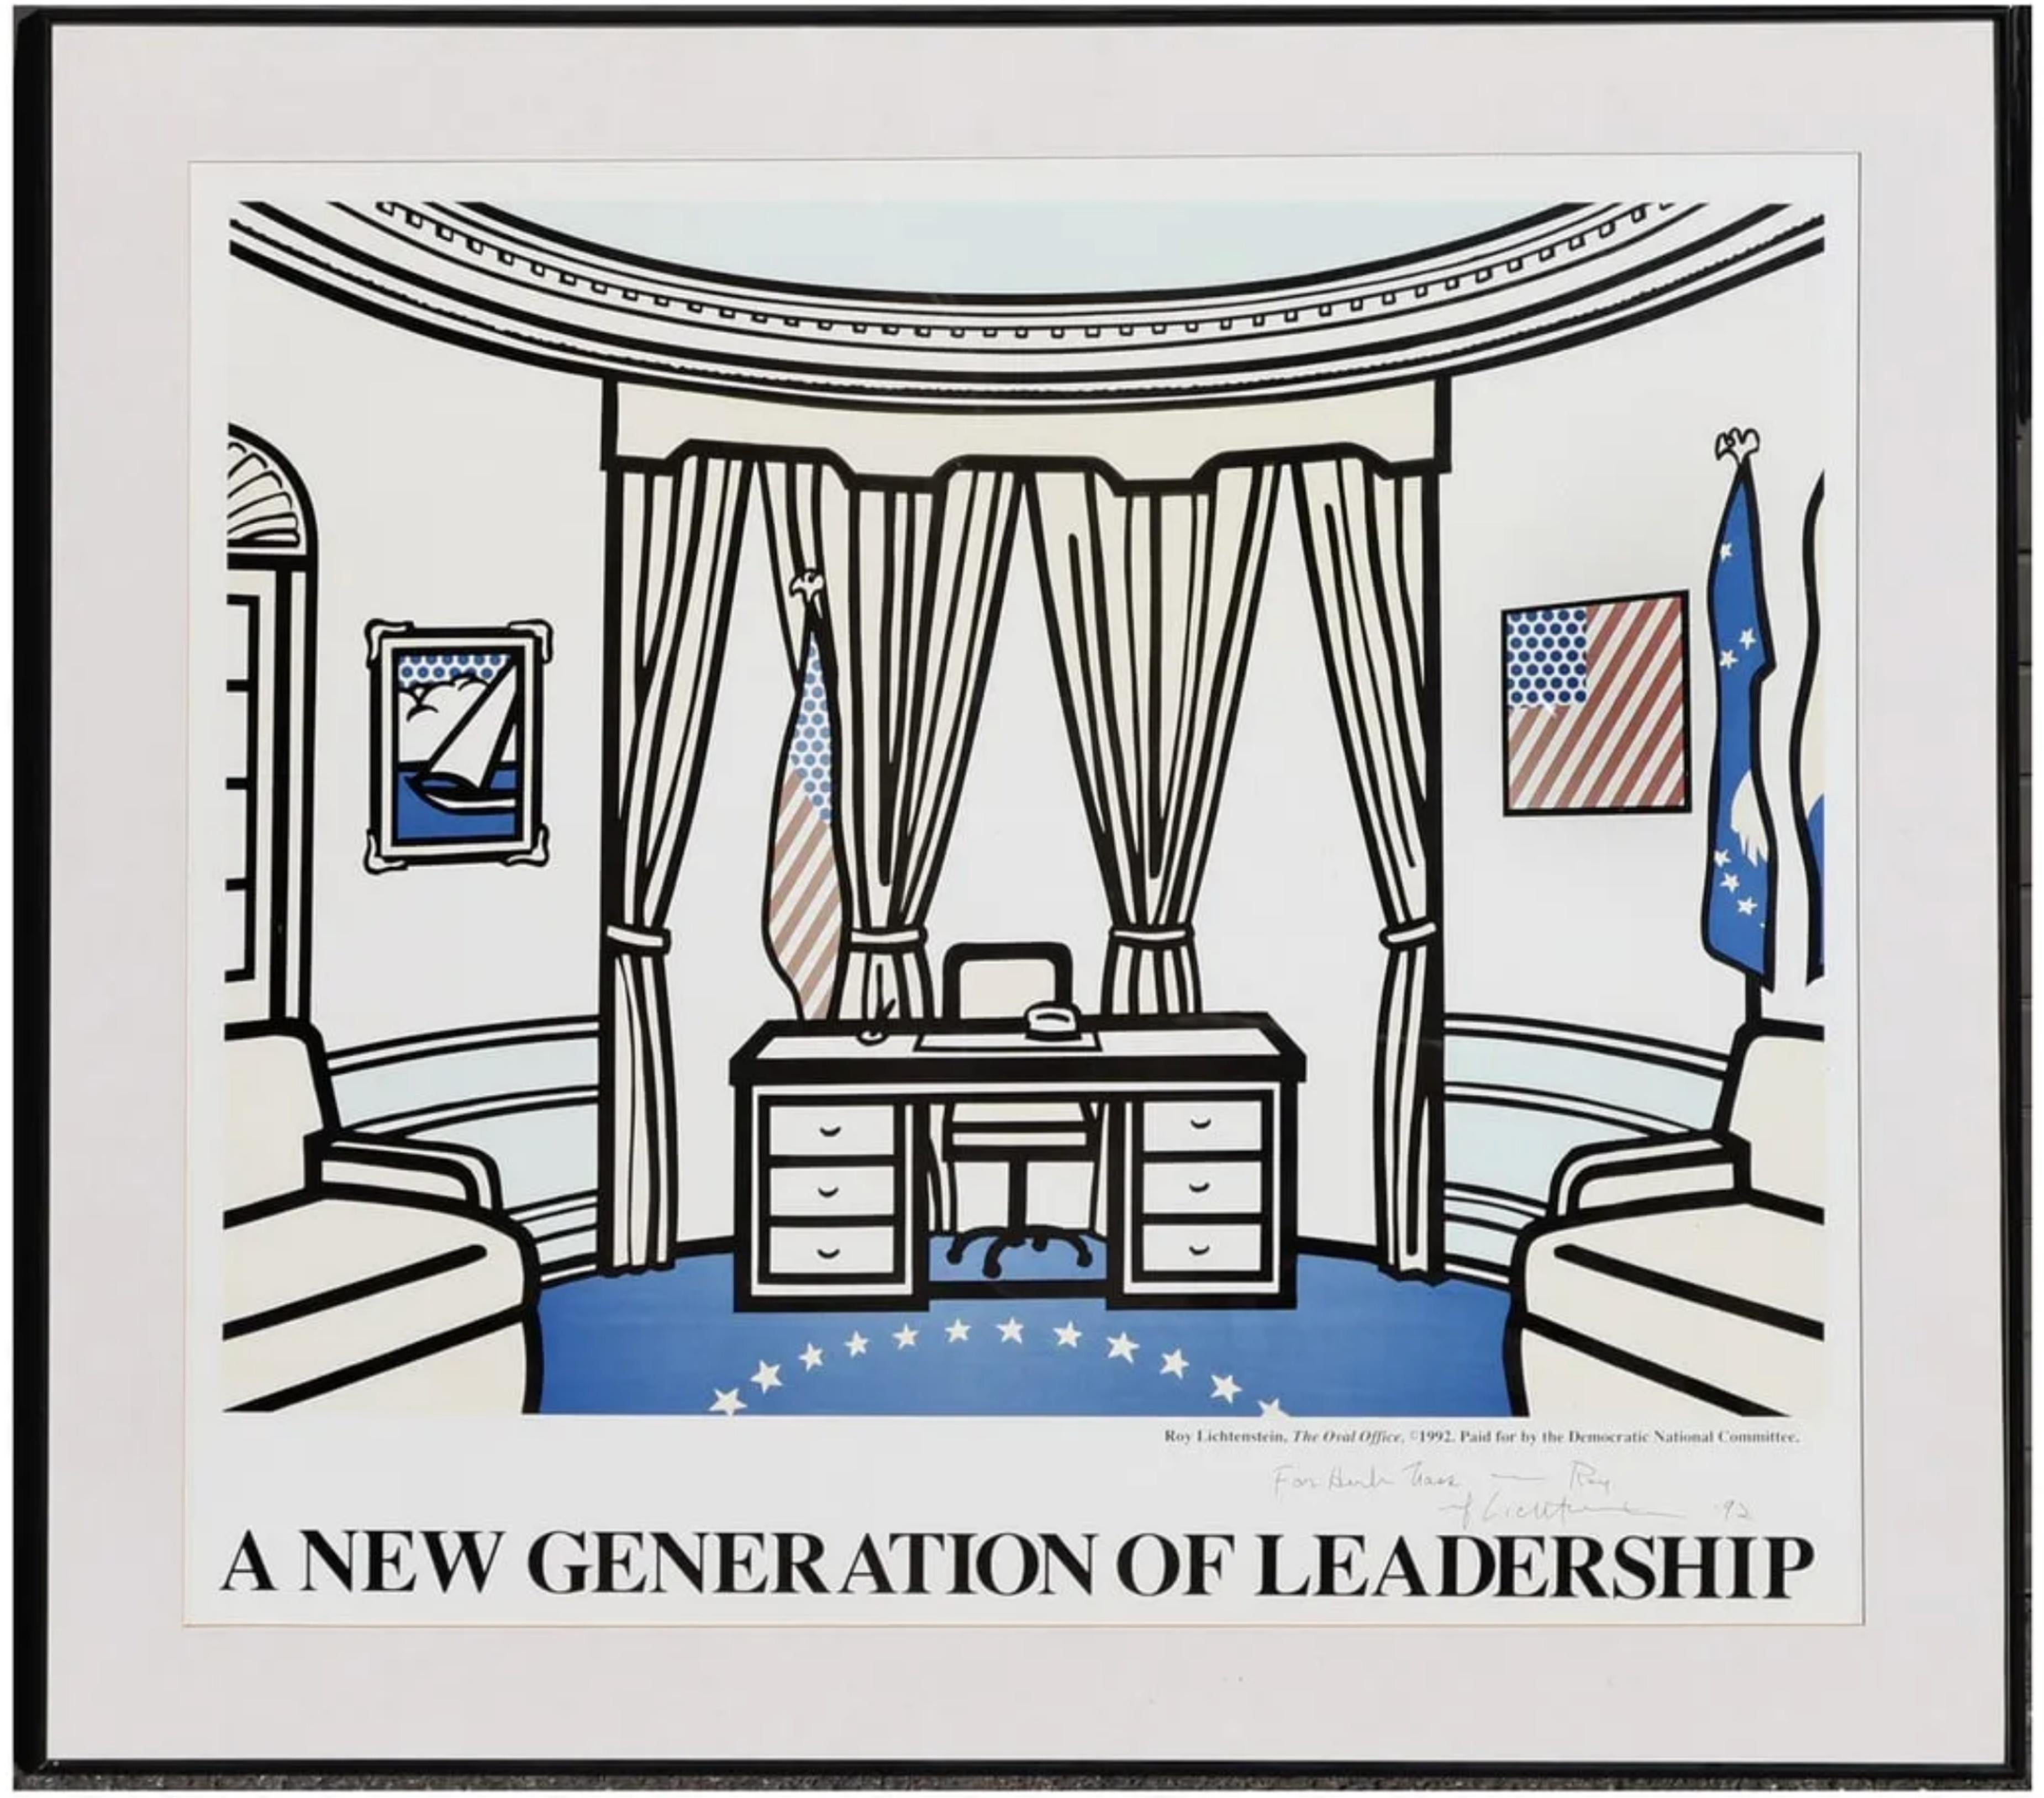 Roy Lichtenstein
The Oval Office (handsigniert, datiert und bezeichnet von Roy Lichtenstein), 1992
Farblithografie im Offsetdruck (handsigniert und mit dem Namen eines berühmten Nachlassverwalters versehen)
Auflage von 500 Stück (die reguläre